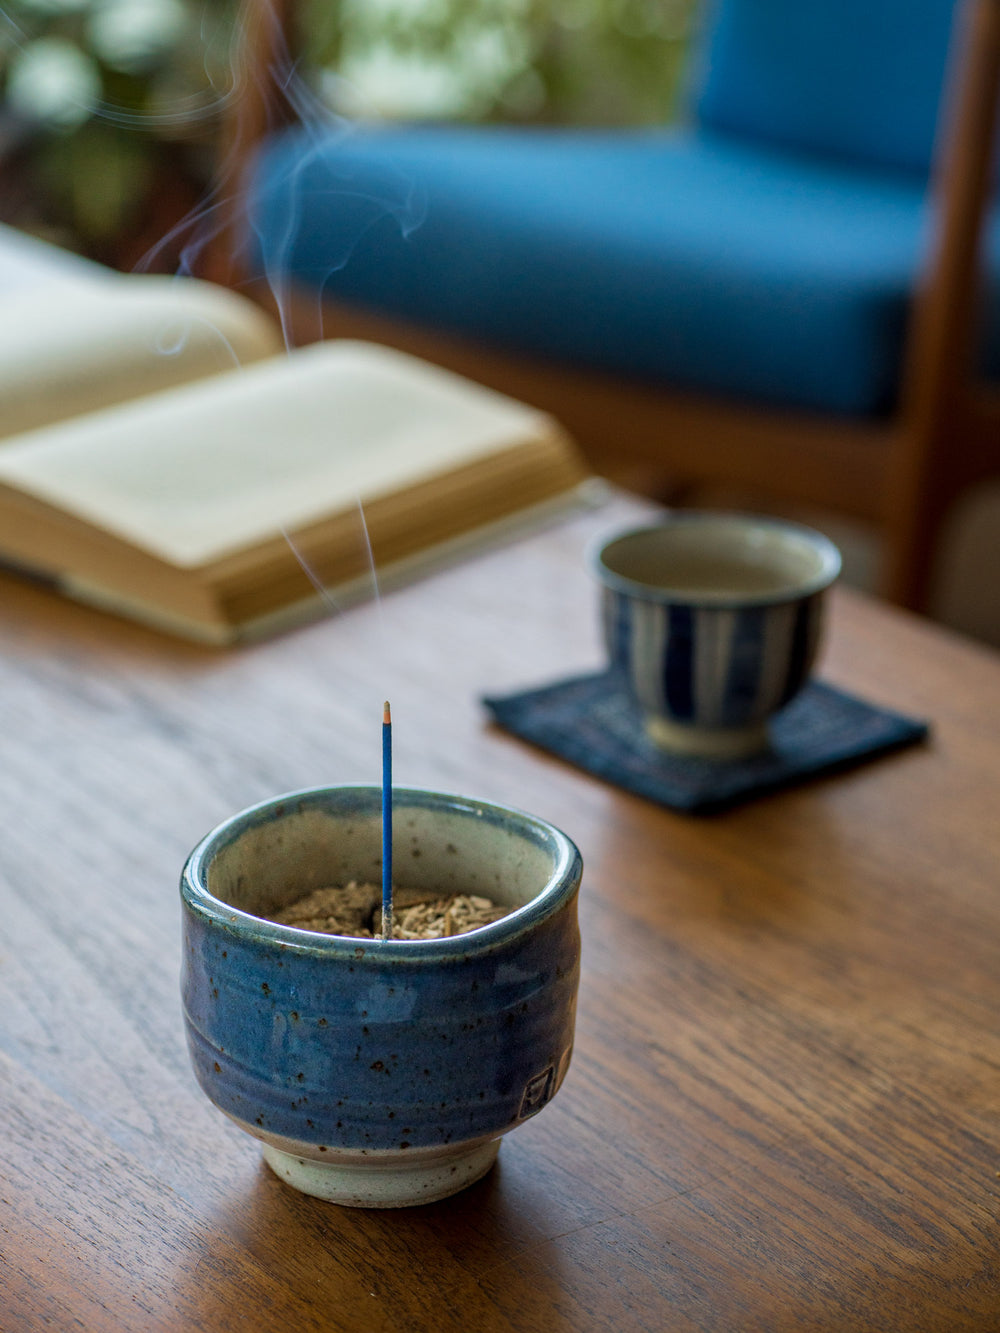 Kungyokudo Incense – Miyama Milkvetch